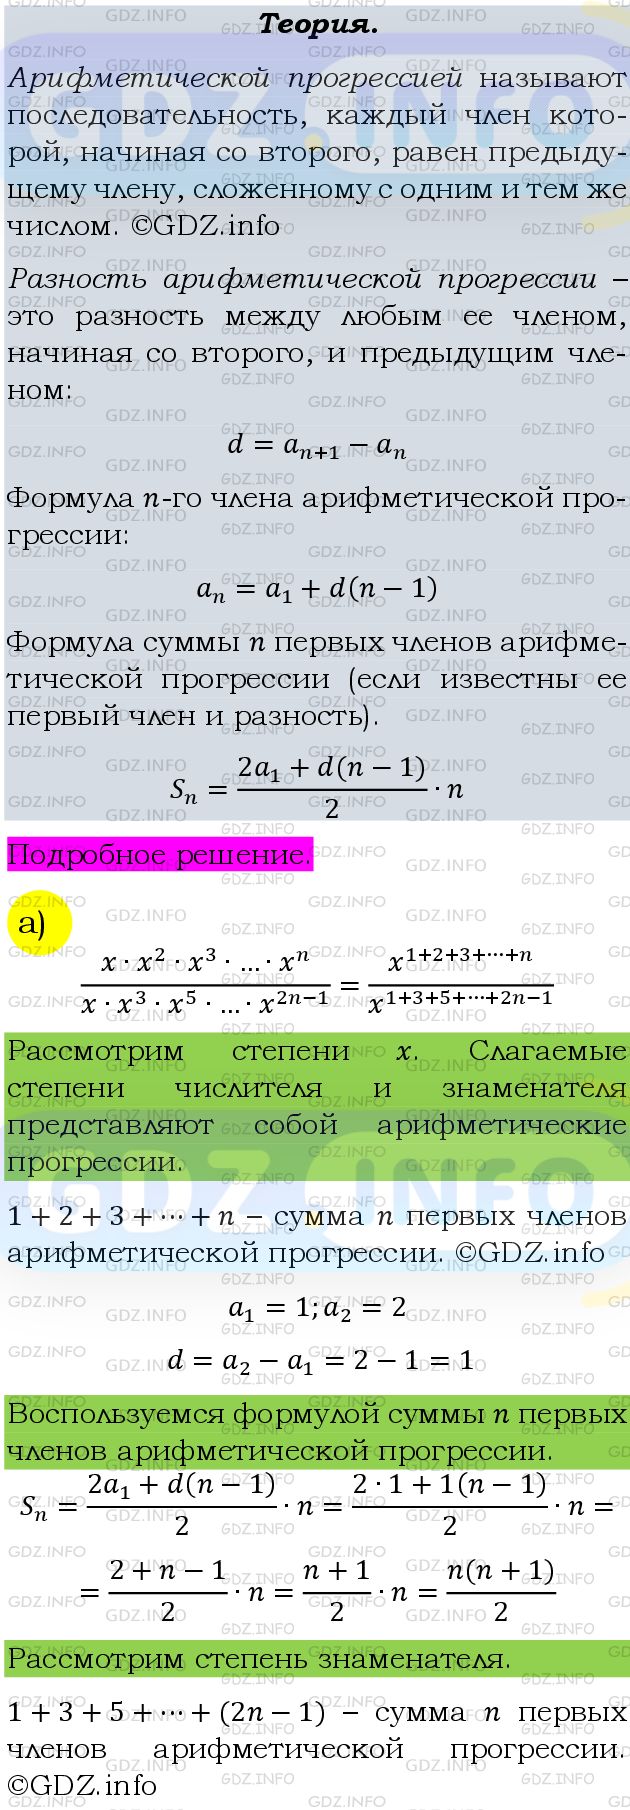 Фото подробного решения: Номер задания №661 из ГДЗ по Алгебре 9 класс: Макарычев Ю.Н.